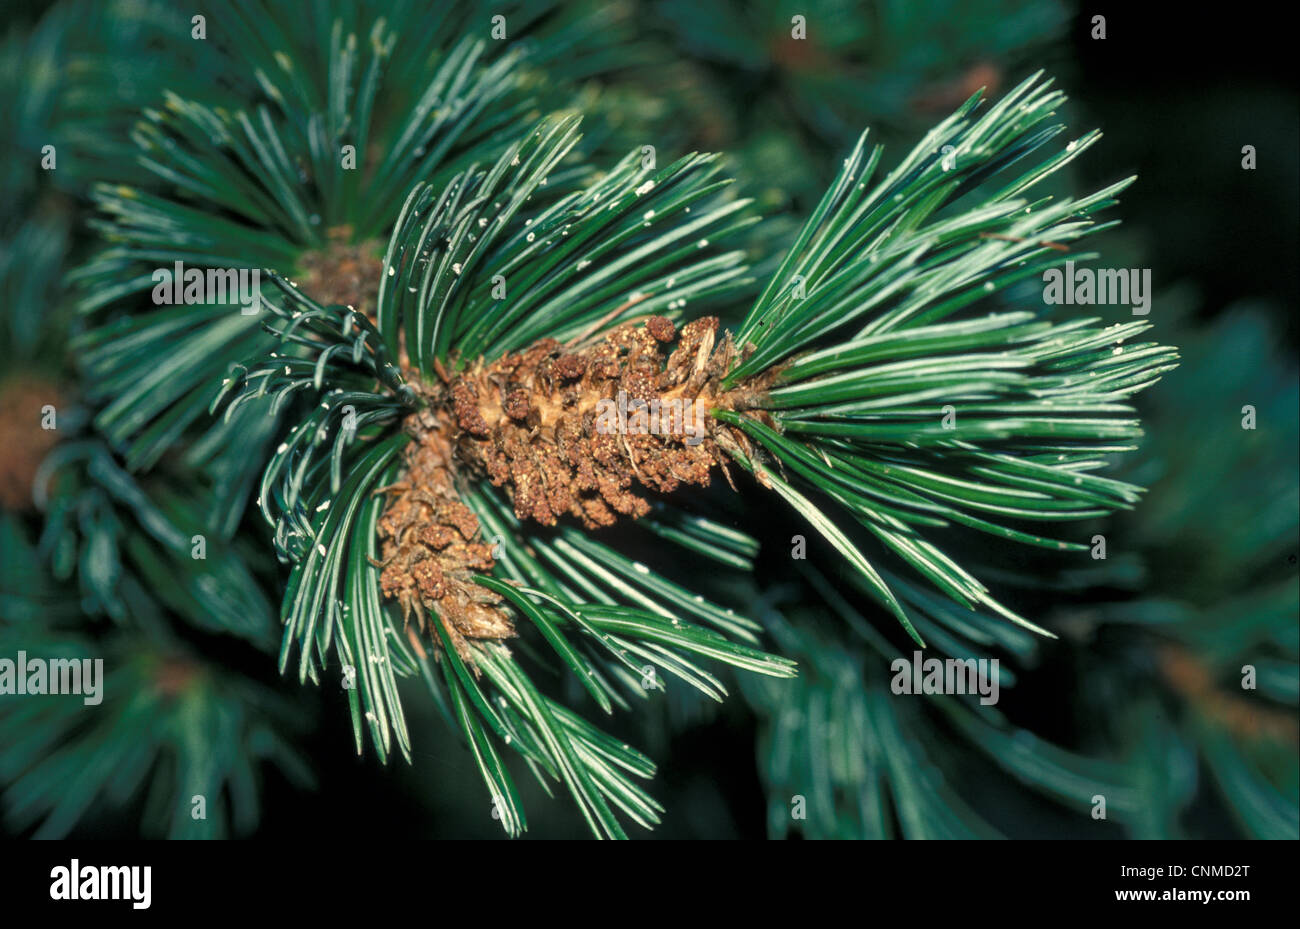 Bristle-cone Pine (Pinus aristata) Close up Stock Photo